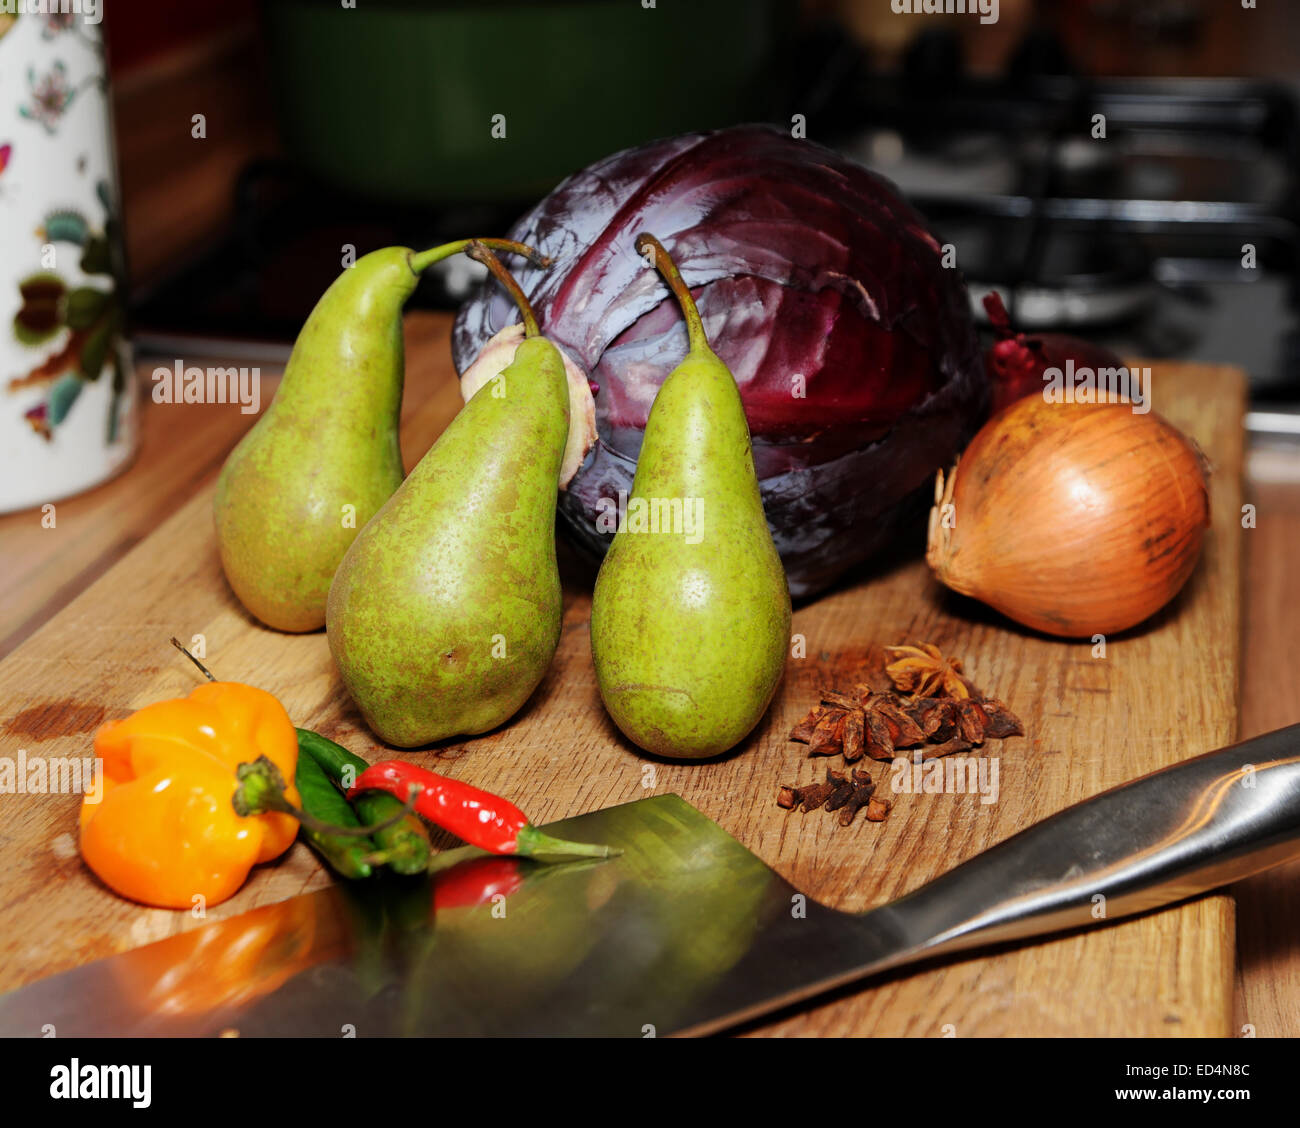 Ingredienti per spiced cavolo rosso con pere anice stellato e i chiodi di garofano e una cipolla bianca sul tagliere con vari peperoncini rossi Foto Stock